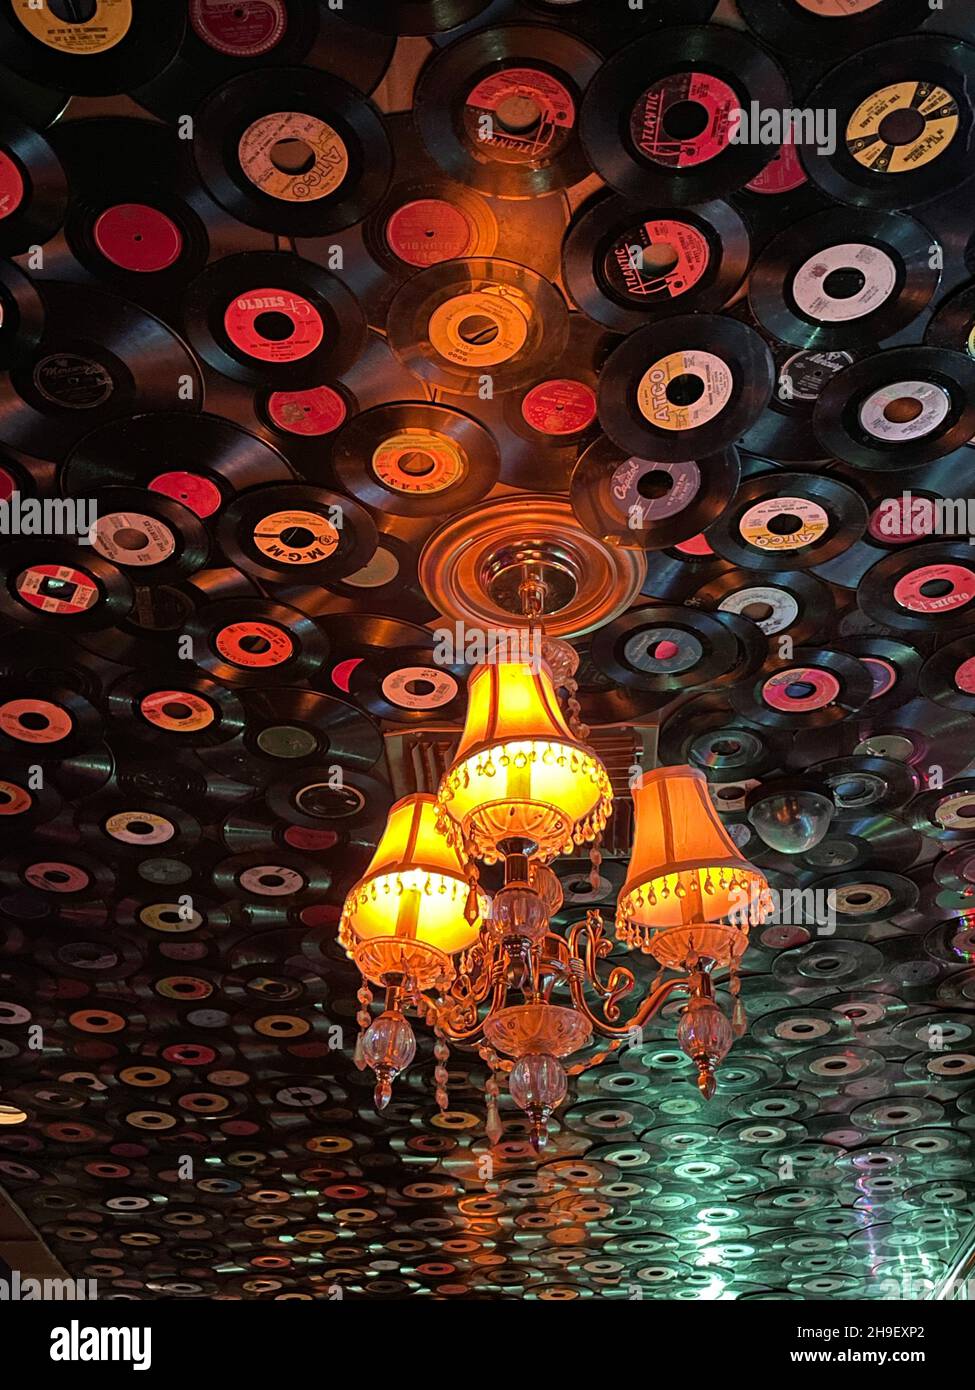 Le plafond du bar de la boîte de nuit Mint est décoré avec de vieux disques individuels de 45 tr/min à Los Angeles, CA Banque D'Images